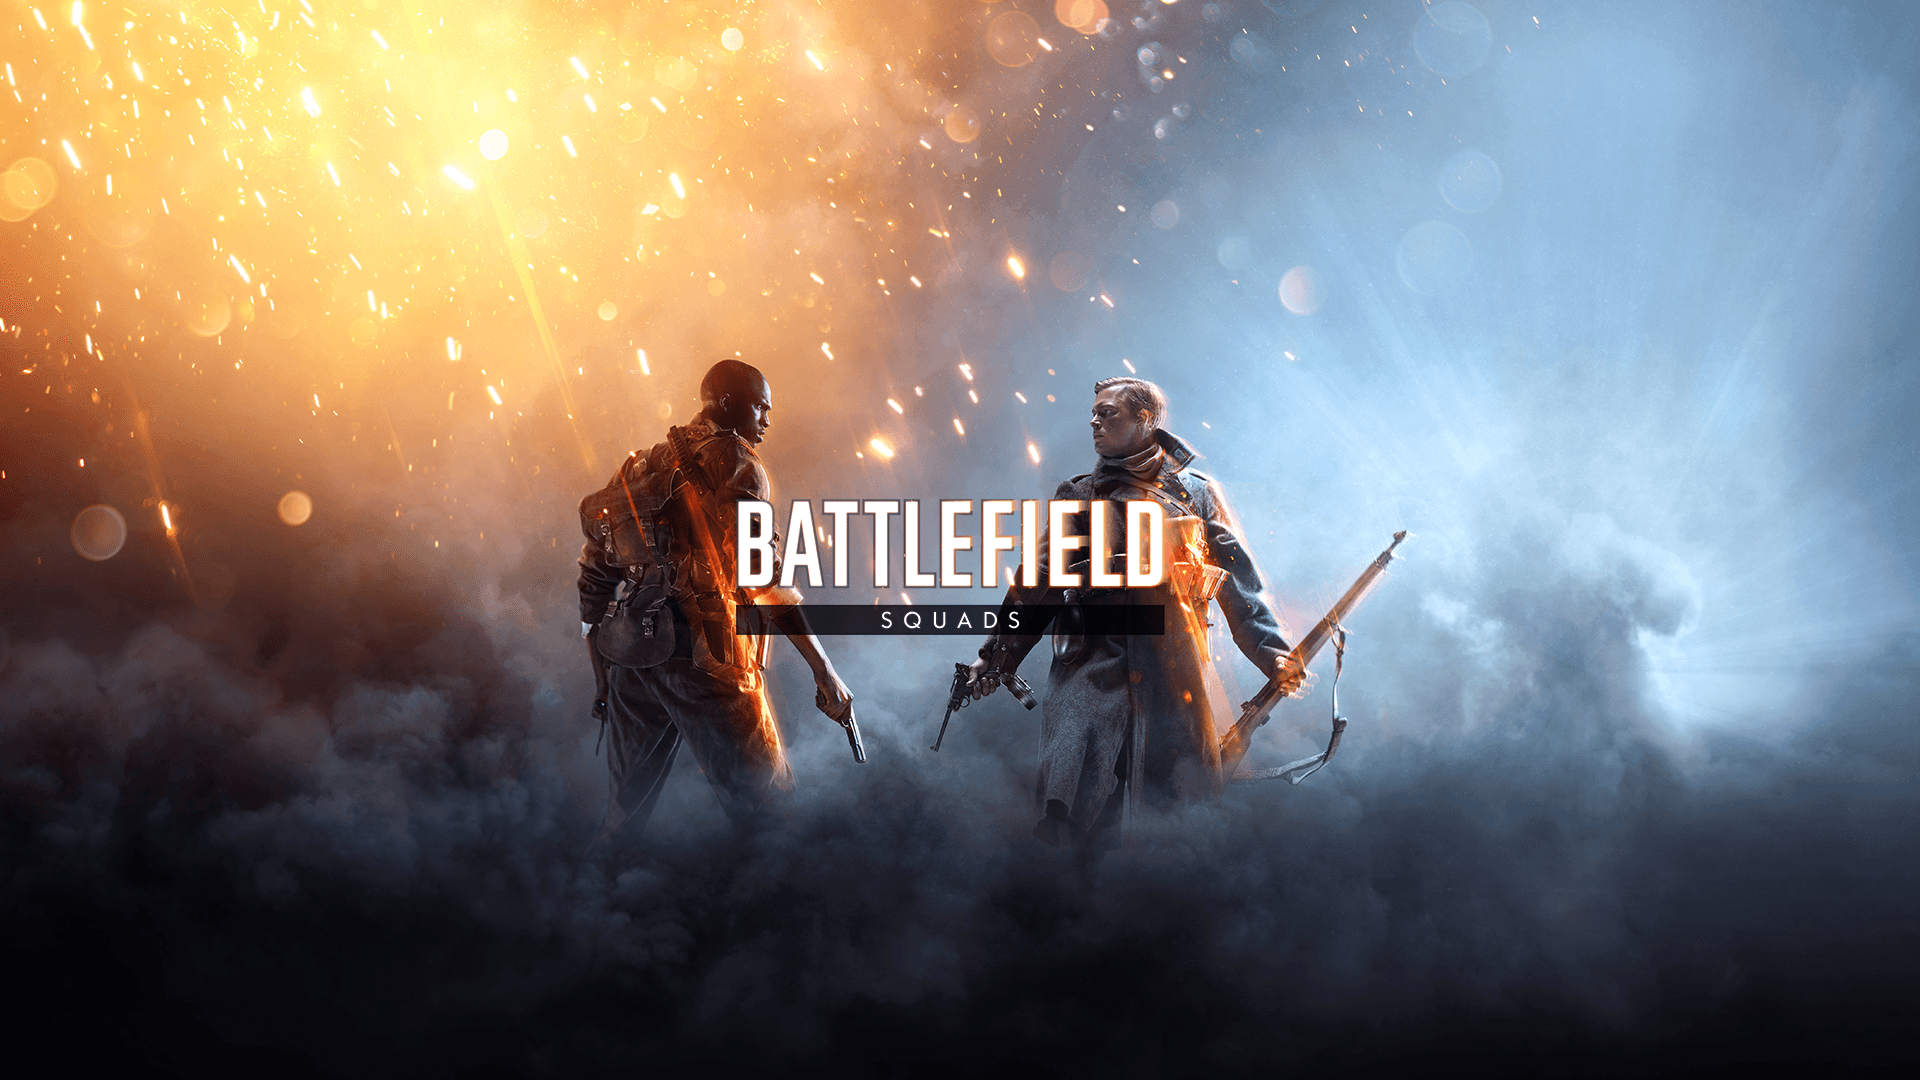 Video Game Battlefield 1 HD Wallpaper